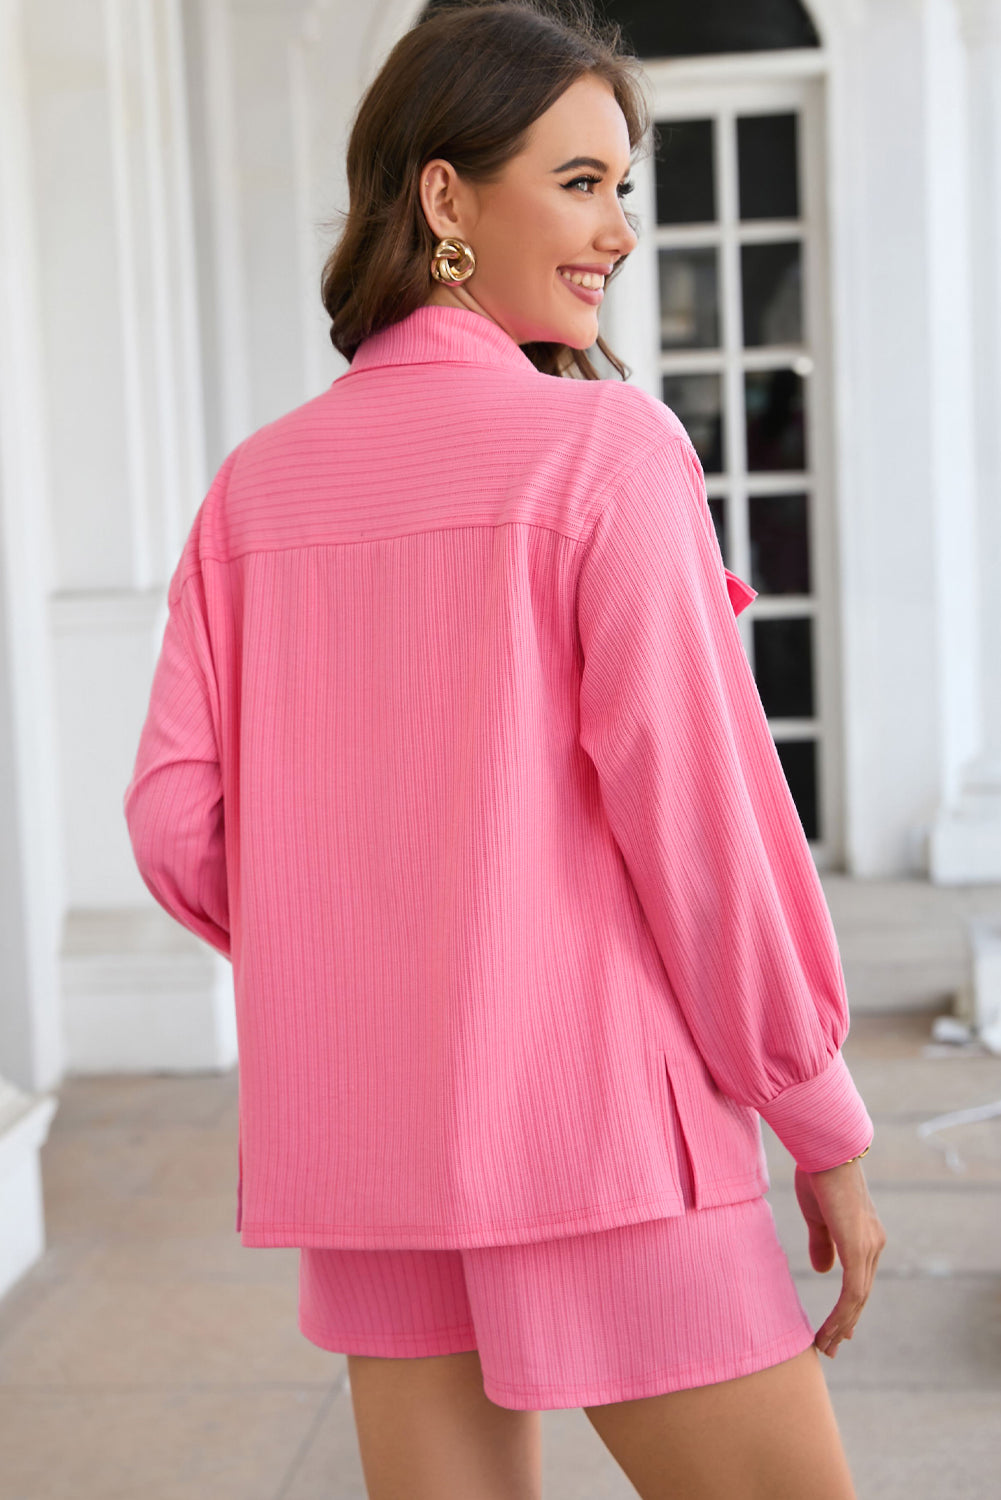 Pink Resort Jacket and Shorts Set